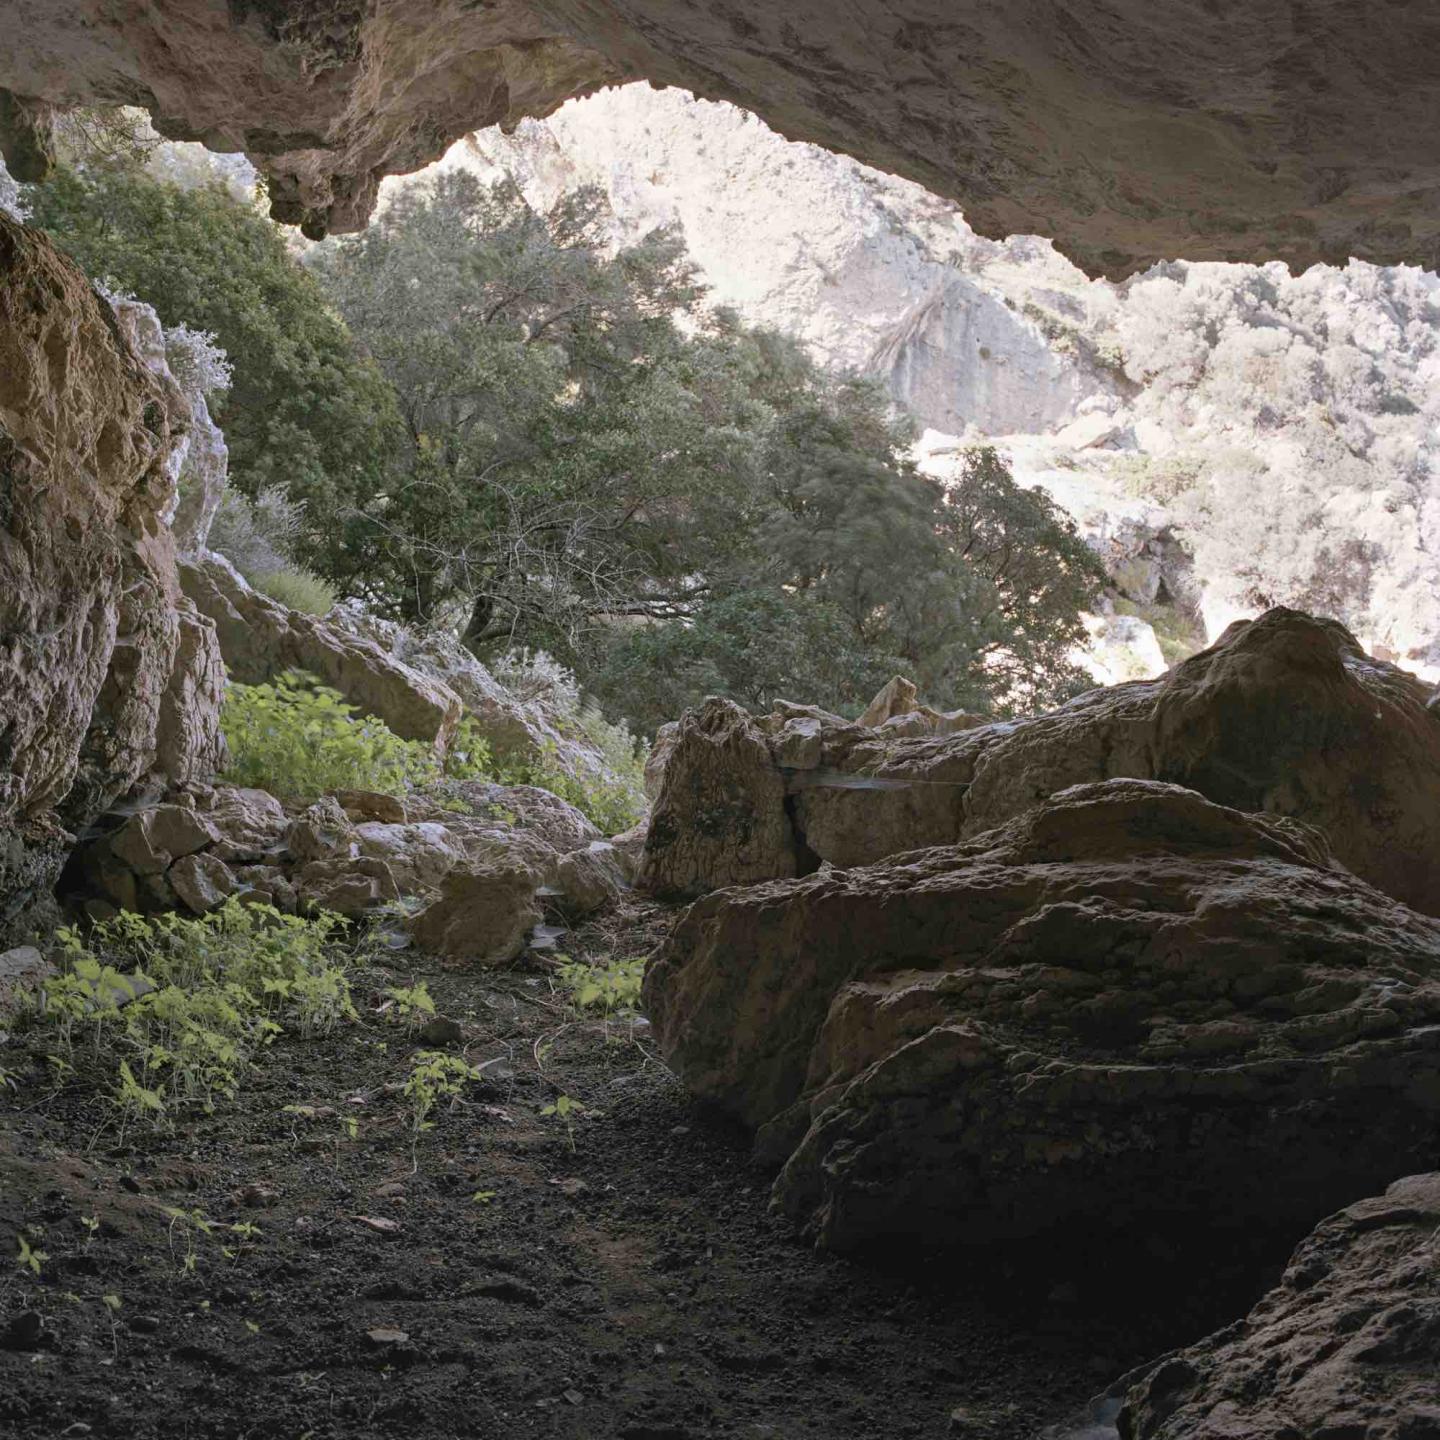 Philippe Bazin, Grotte près de Therma ayant permis aux exilés communistes de se cacher lors de la guerre civile (1946-1949), Ikaria, avril 2018.